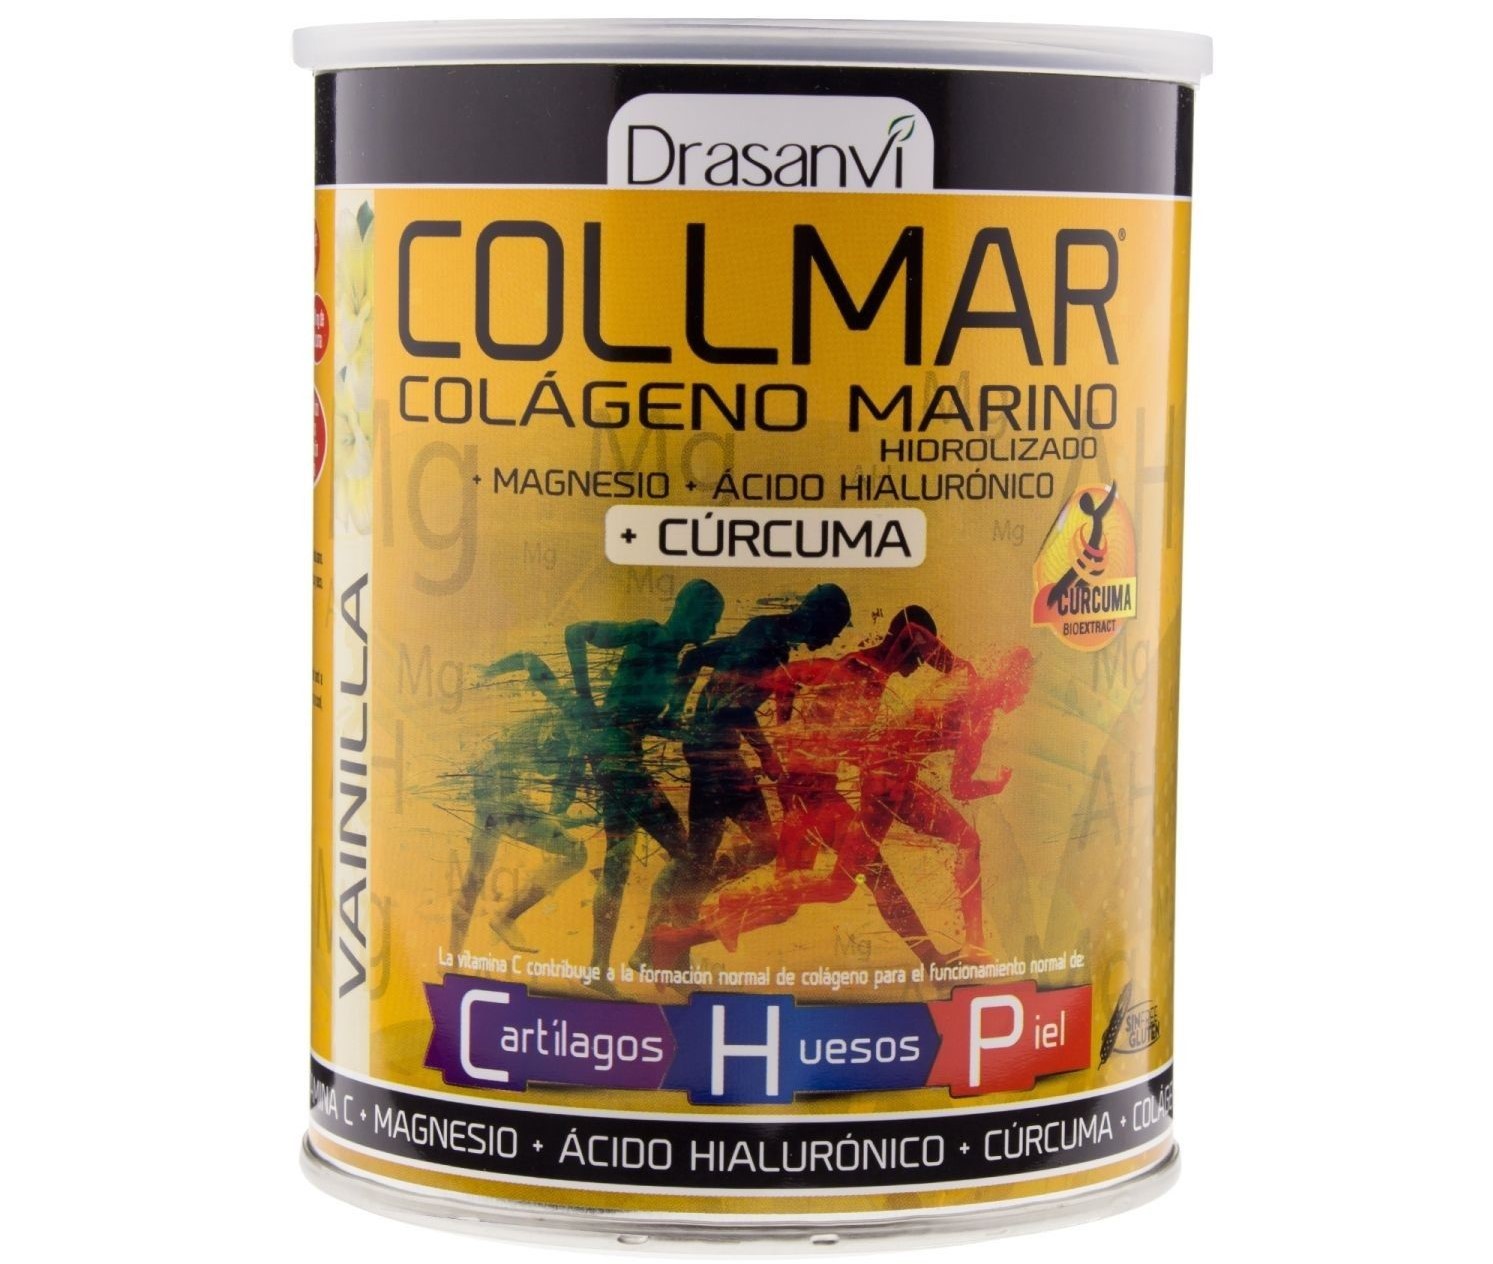 Comprar Drasanvi Collmar Colágeno Marino Hidrolizado contiene magnesio, ácido hialurónico y vitamina C normal funcionamiento de cartílagos, huesos y piel